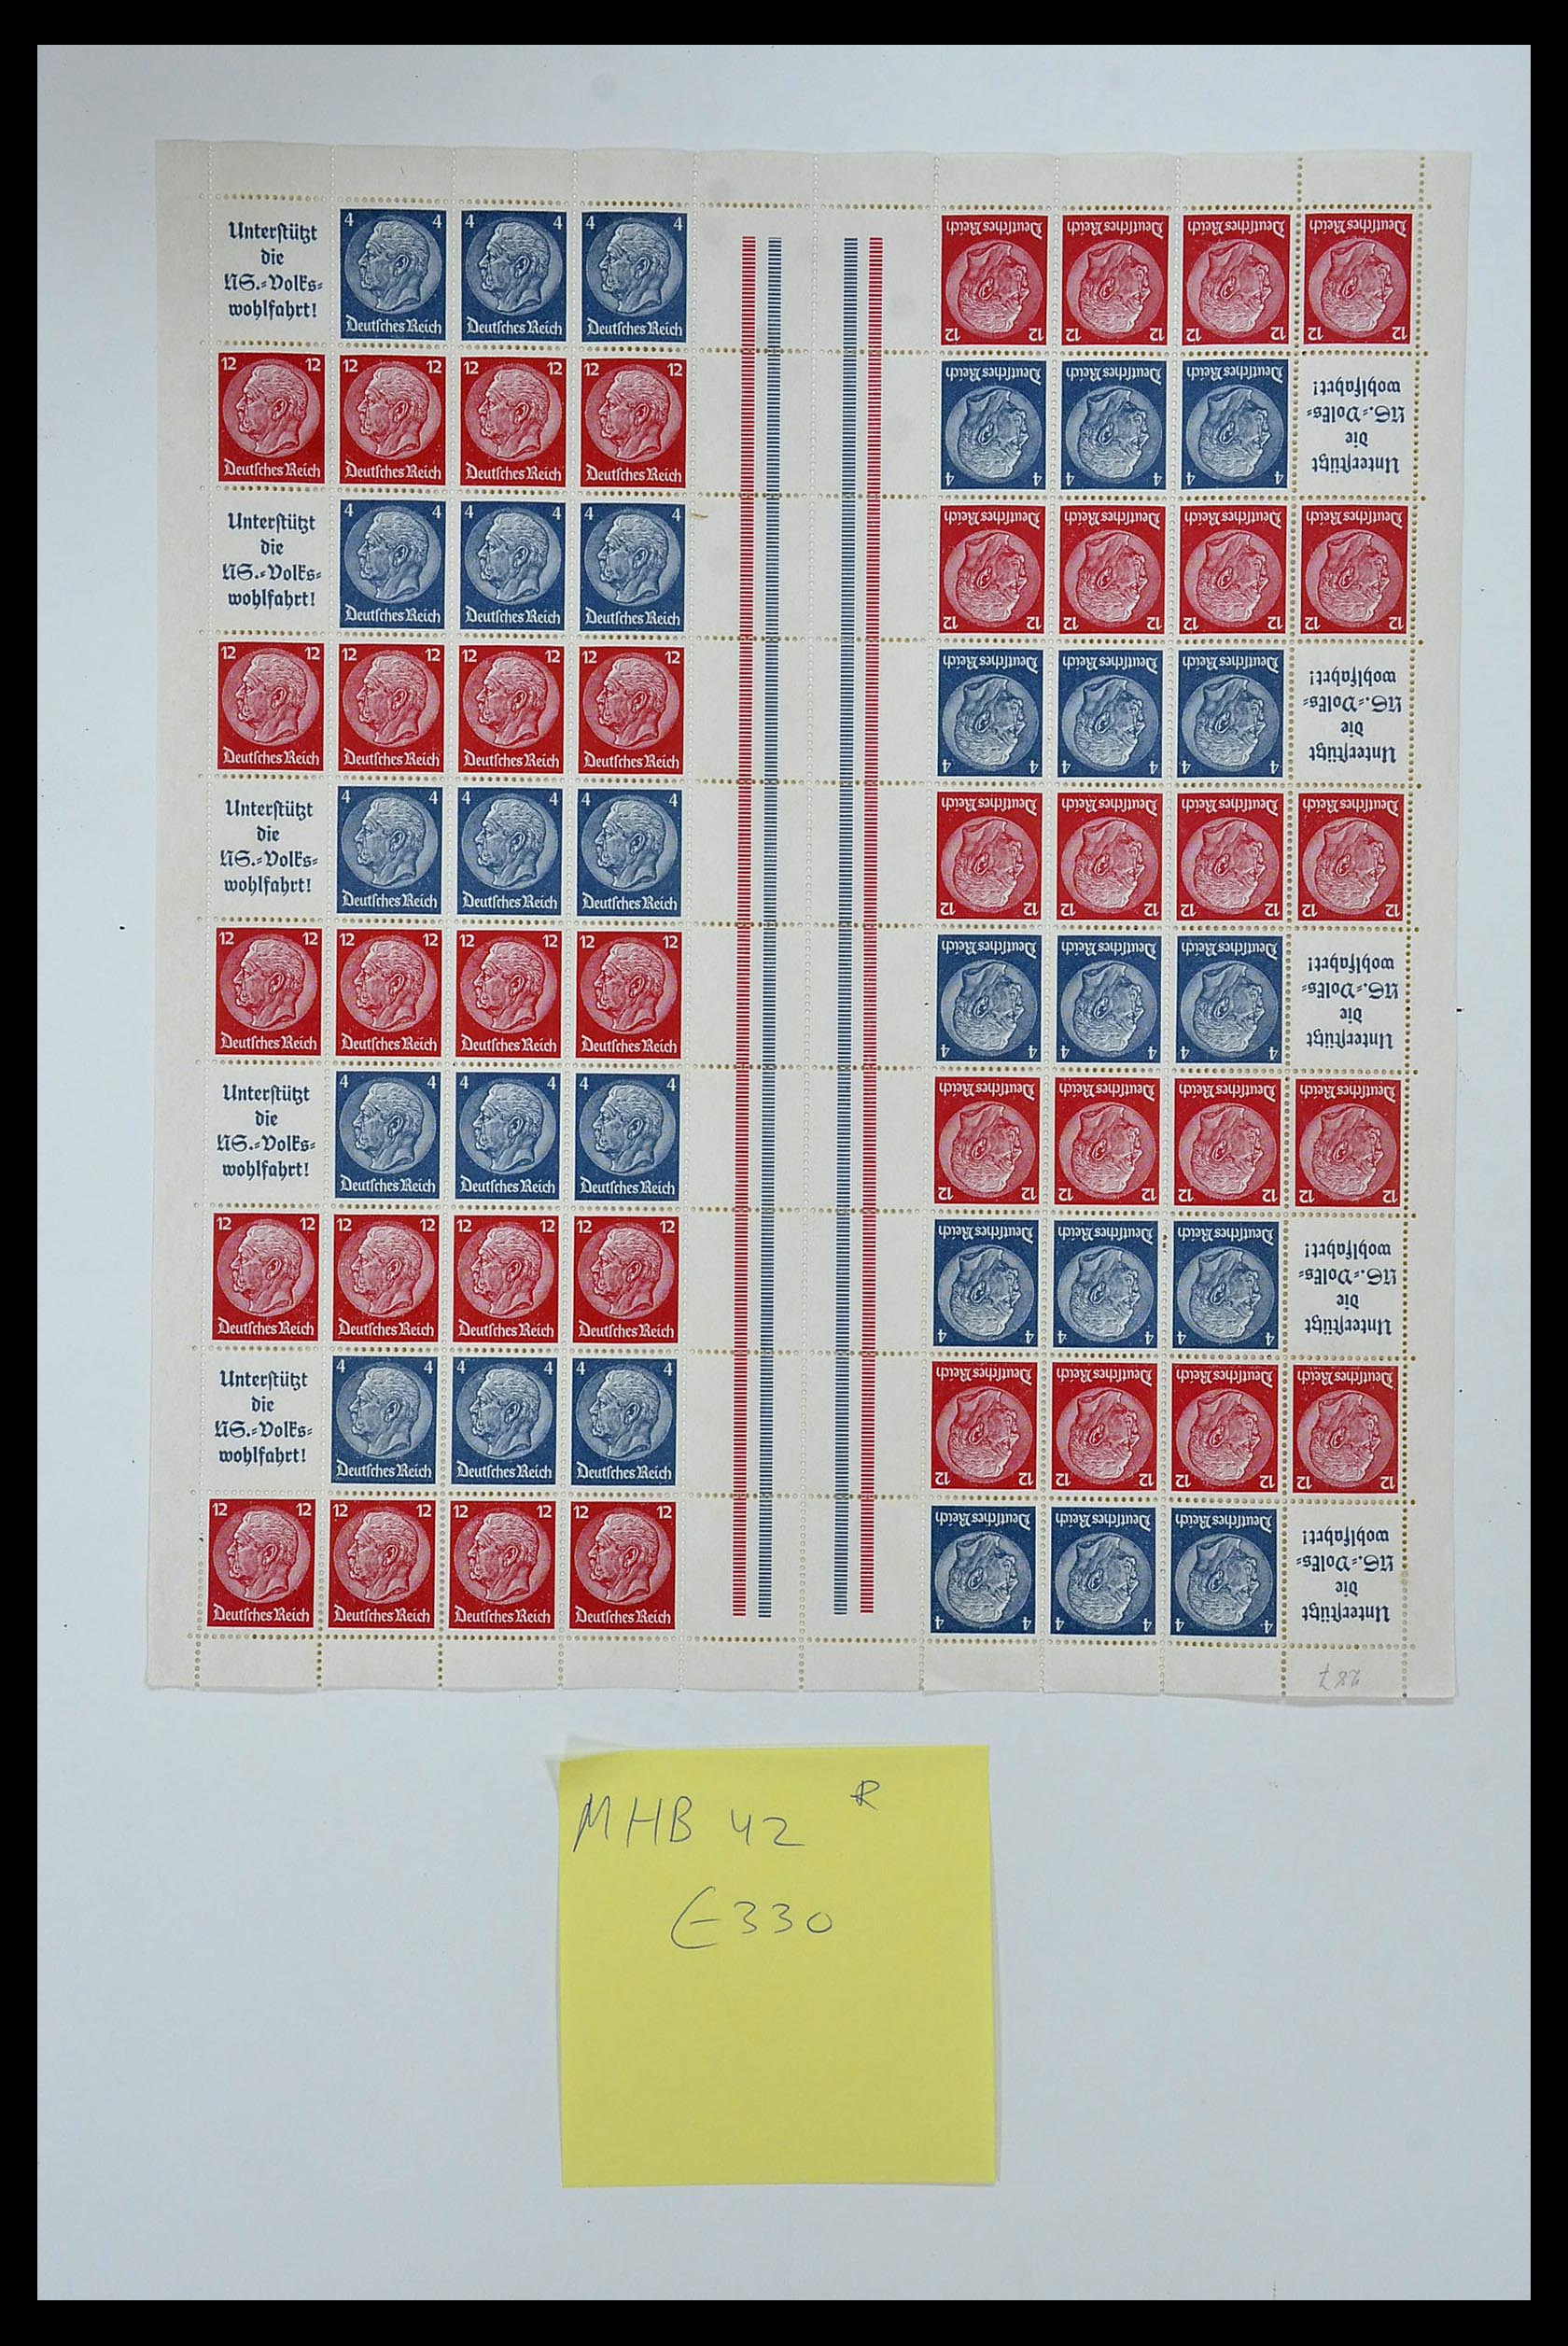 35075 023 - Stamp Collection 35075 German Reich Markenheftchenbogen 1933-1941.